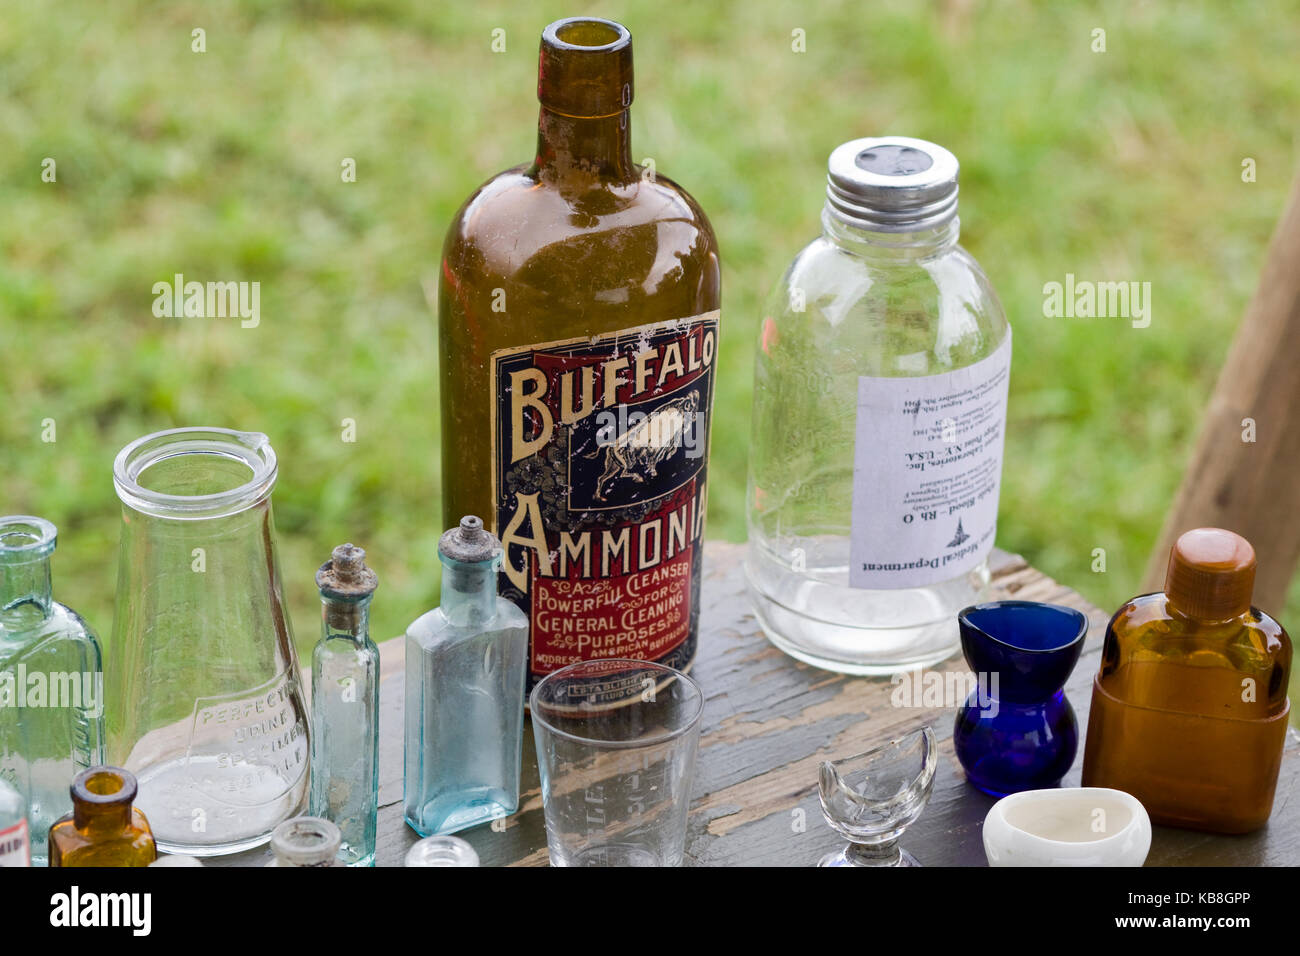 Buffalo Ammonia bottle on a table Stock Photo